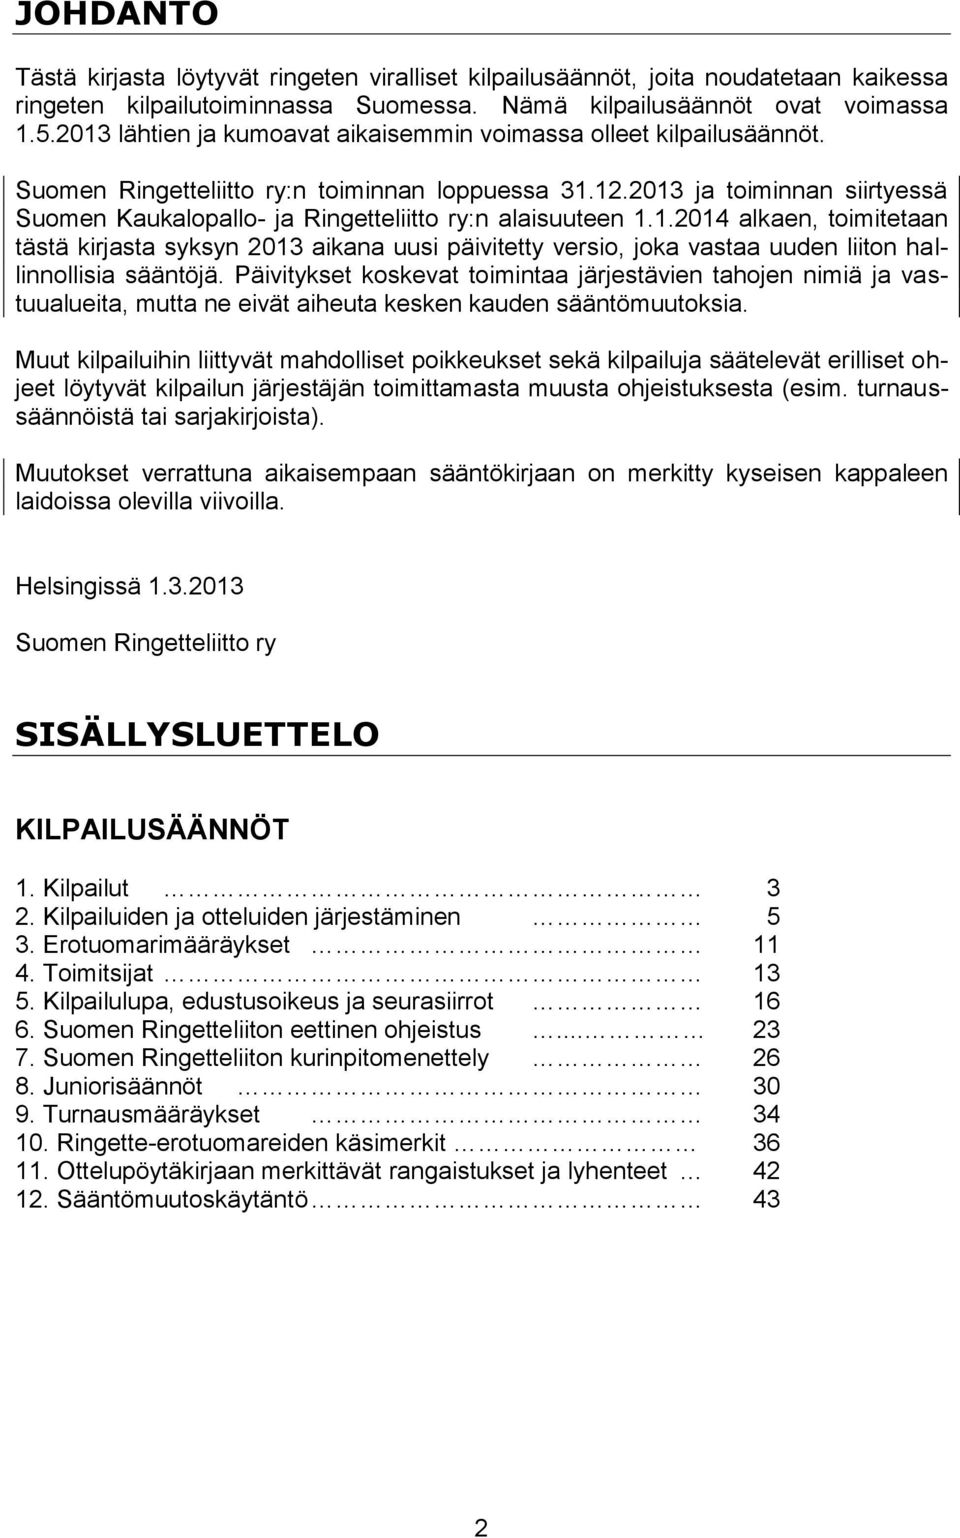 2013 ja toiminnan siirtyessä Suomen Kaukalopallo- ja Ringetteliitto ry:n alaisuuteen 1.1.2014 alkaen, toimitetaan tästä kirjasta syksyn 2013 aikana uusi päivitetty versio, joka vastaa uuden liiton hallinnollisia sääntöjä.